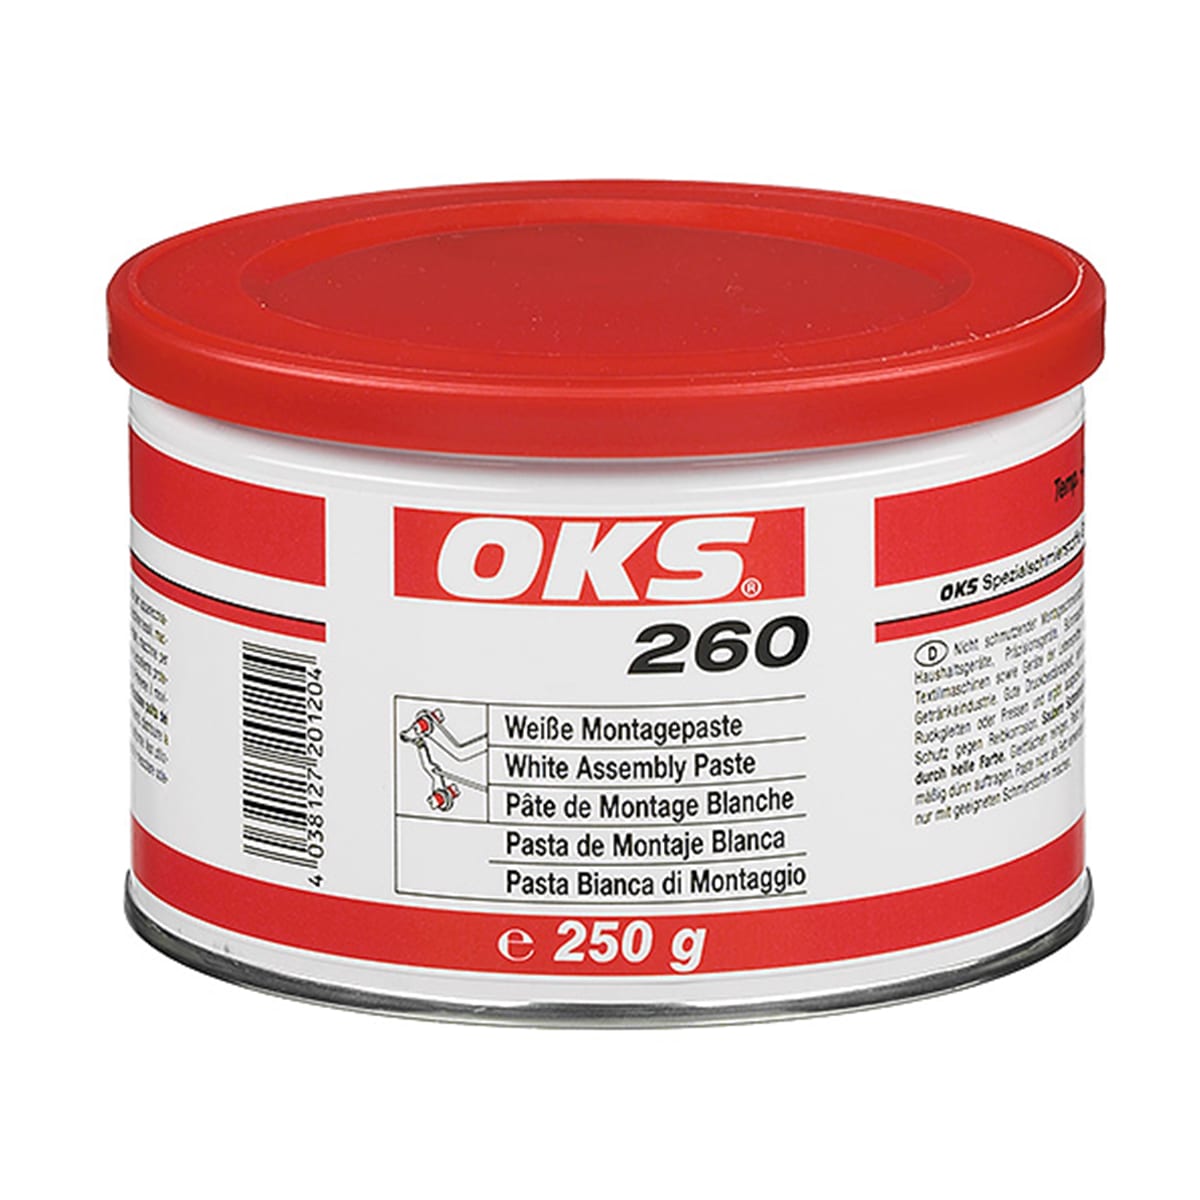 OKS Weiße Montagepaste - No. 260 Dose: 250 g